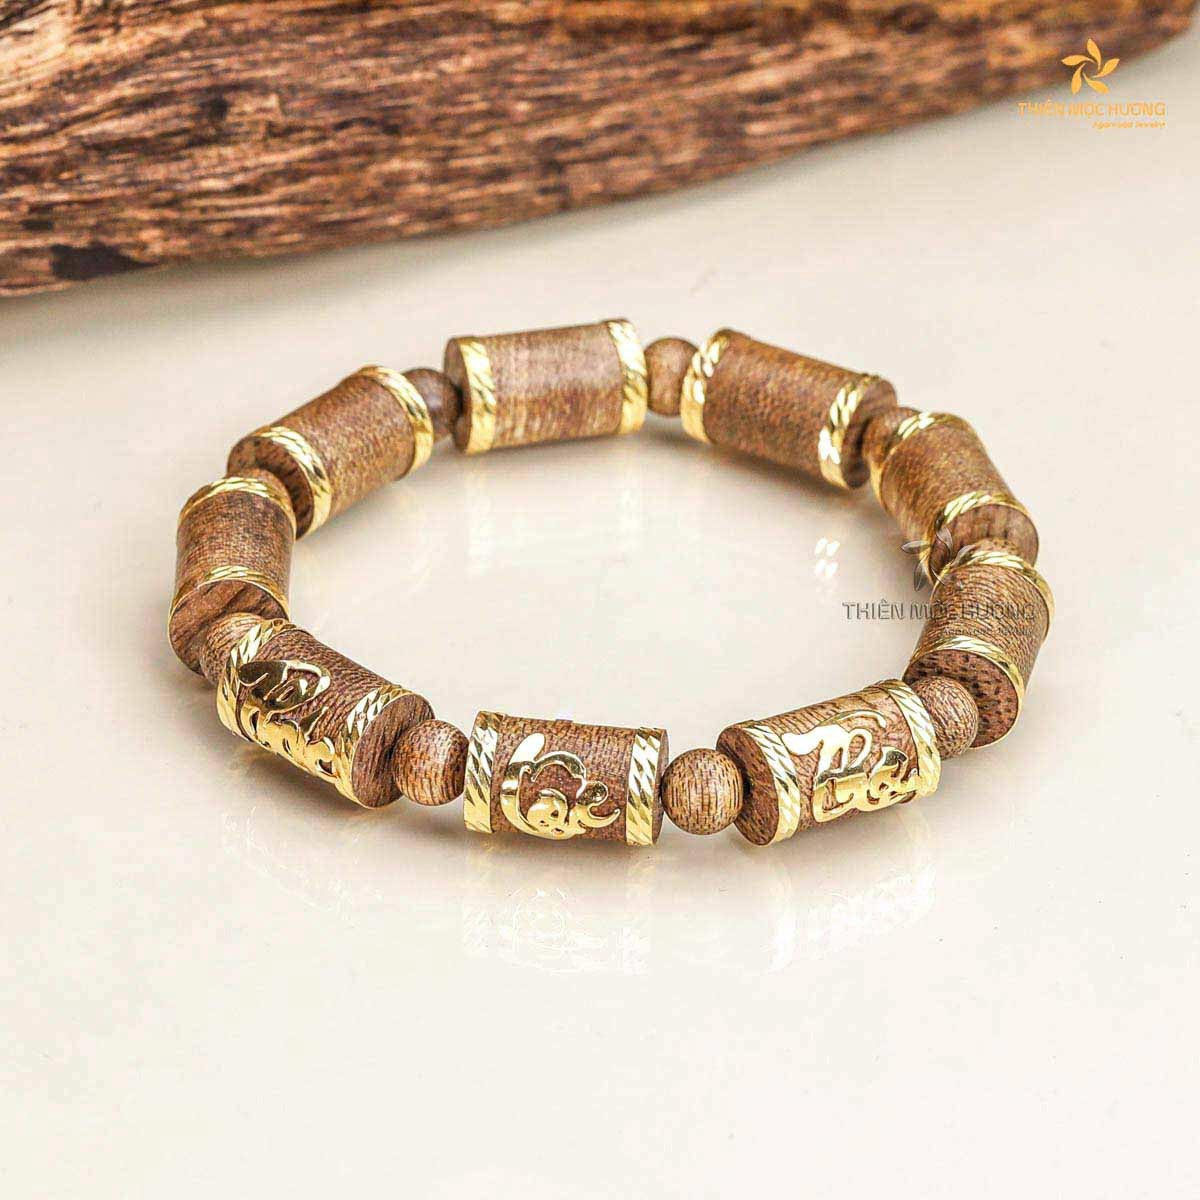 Best agarwood bracelet for men - The Golden Longevity Bracelet helps the men maintain calmness and mindfulness